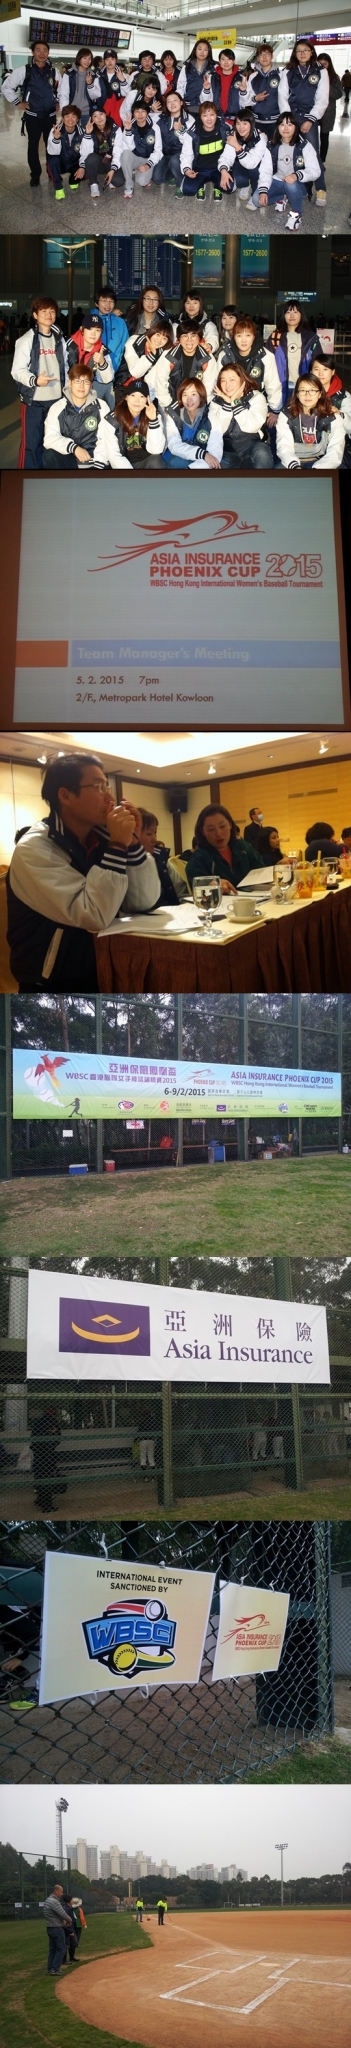 한국 여자 야구 대표팀(구리 나인빅스)이 홍콩에서 열리는 \'아시아 보험 홍콩 피닉스컵 2015(Asia Insurance Phoenix Cup 2015)\' 참가를 위해 홍콩을 방문했다. 이번 대회는 6일부터 오는 9일까지 홍콩에서 열린다. /사진=나인빅스, 홍콩야구협회 페이스북 제공